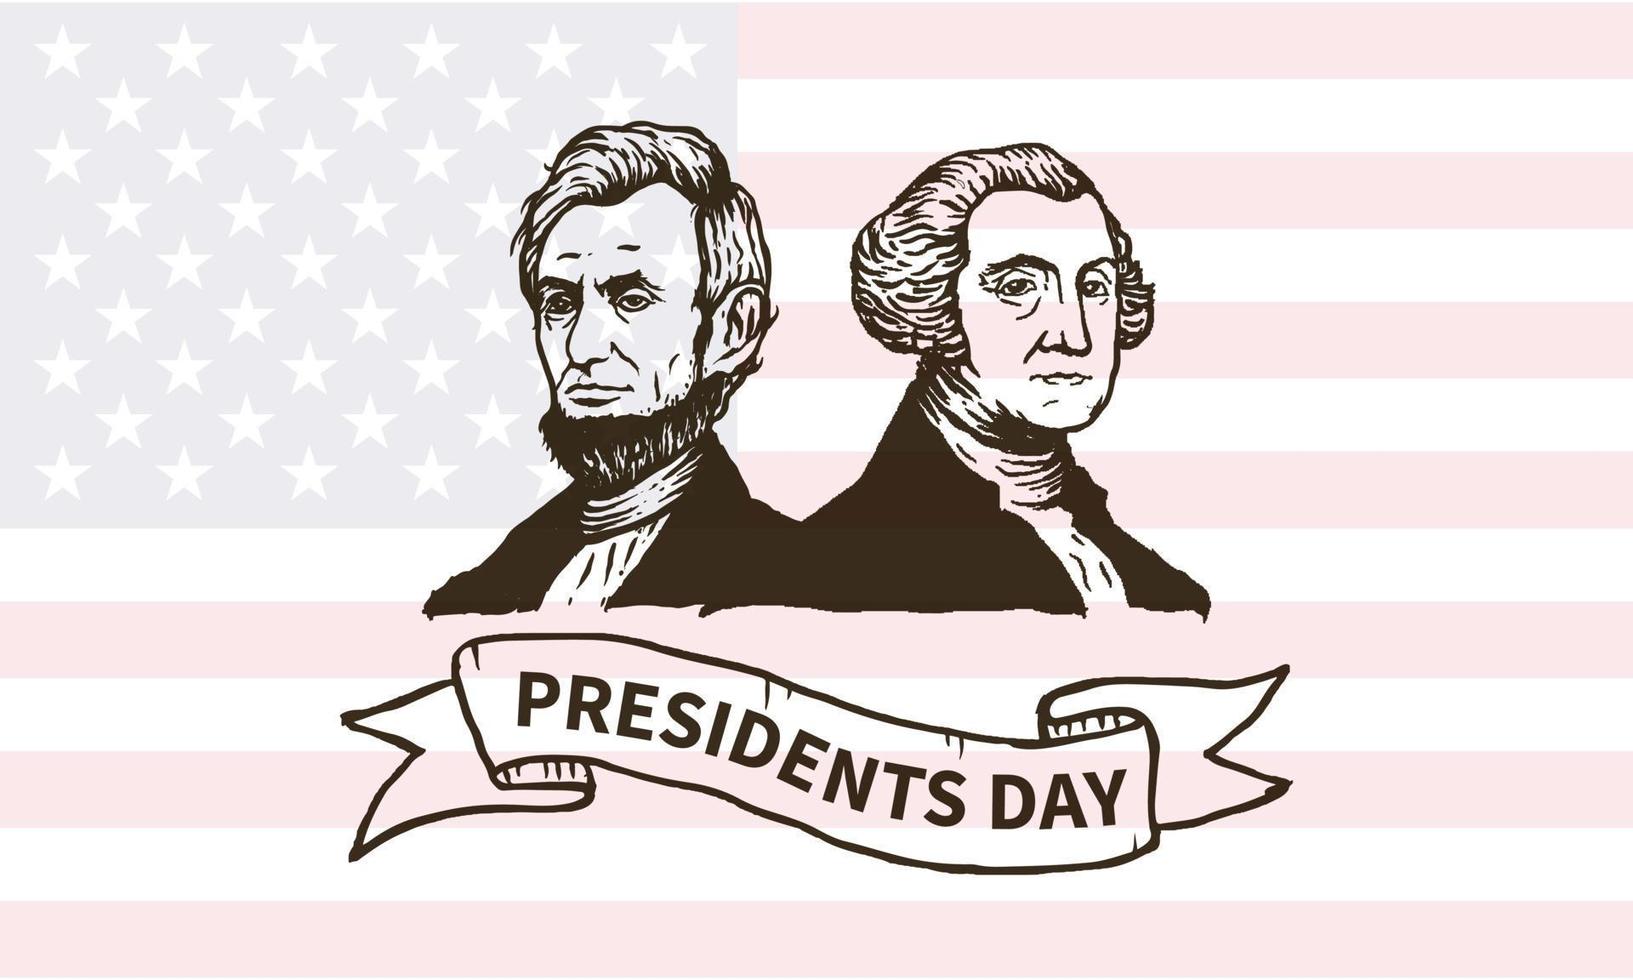 buona giornata dei presidenti negli stati uniti. il compleanno di Washington. festa federale in america. celebrato a febbraio. poster, banner e sfondo vettore